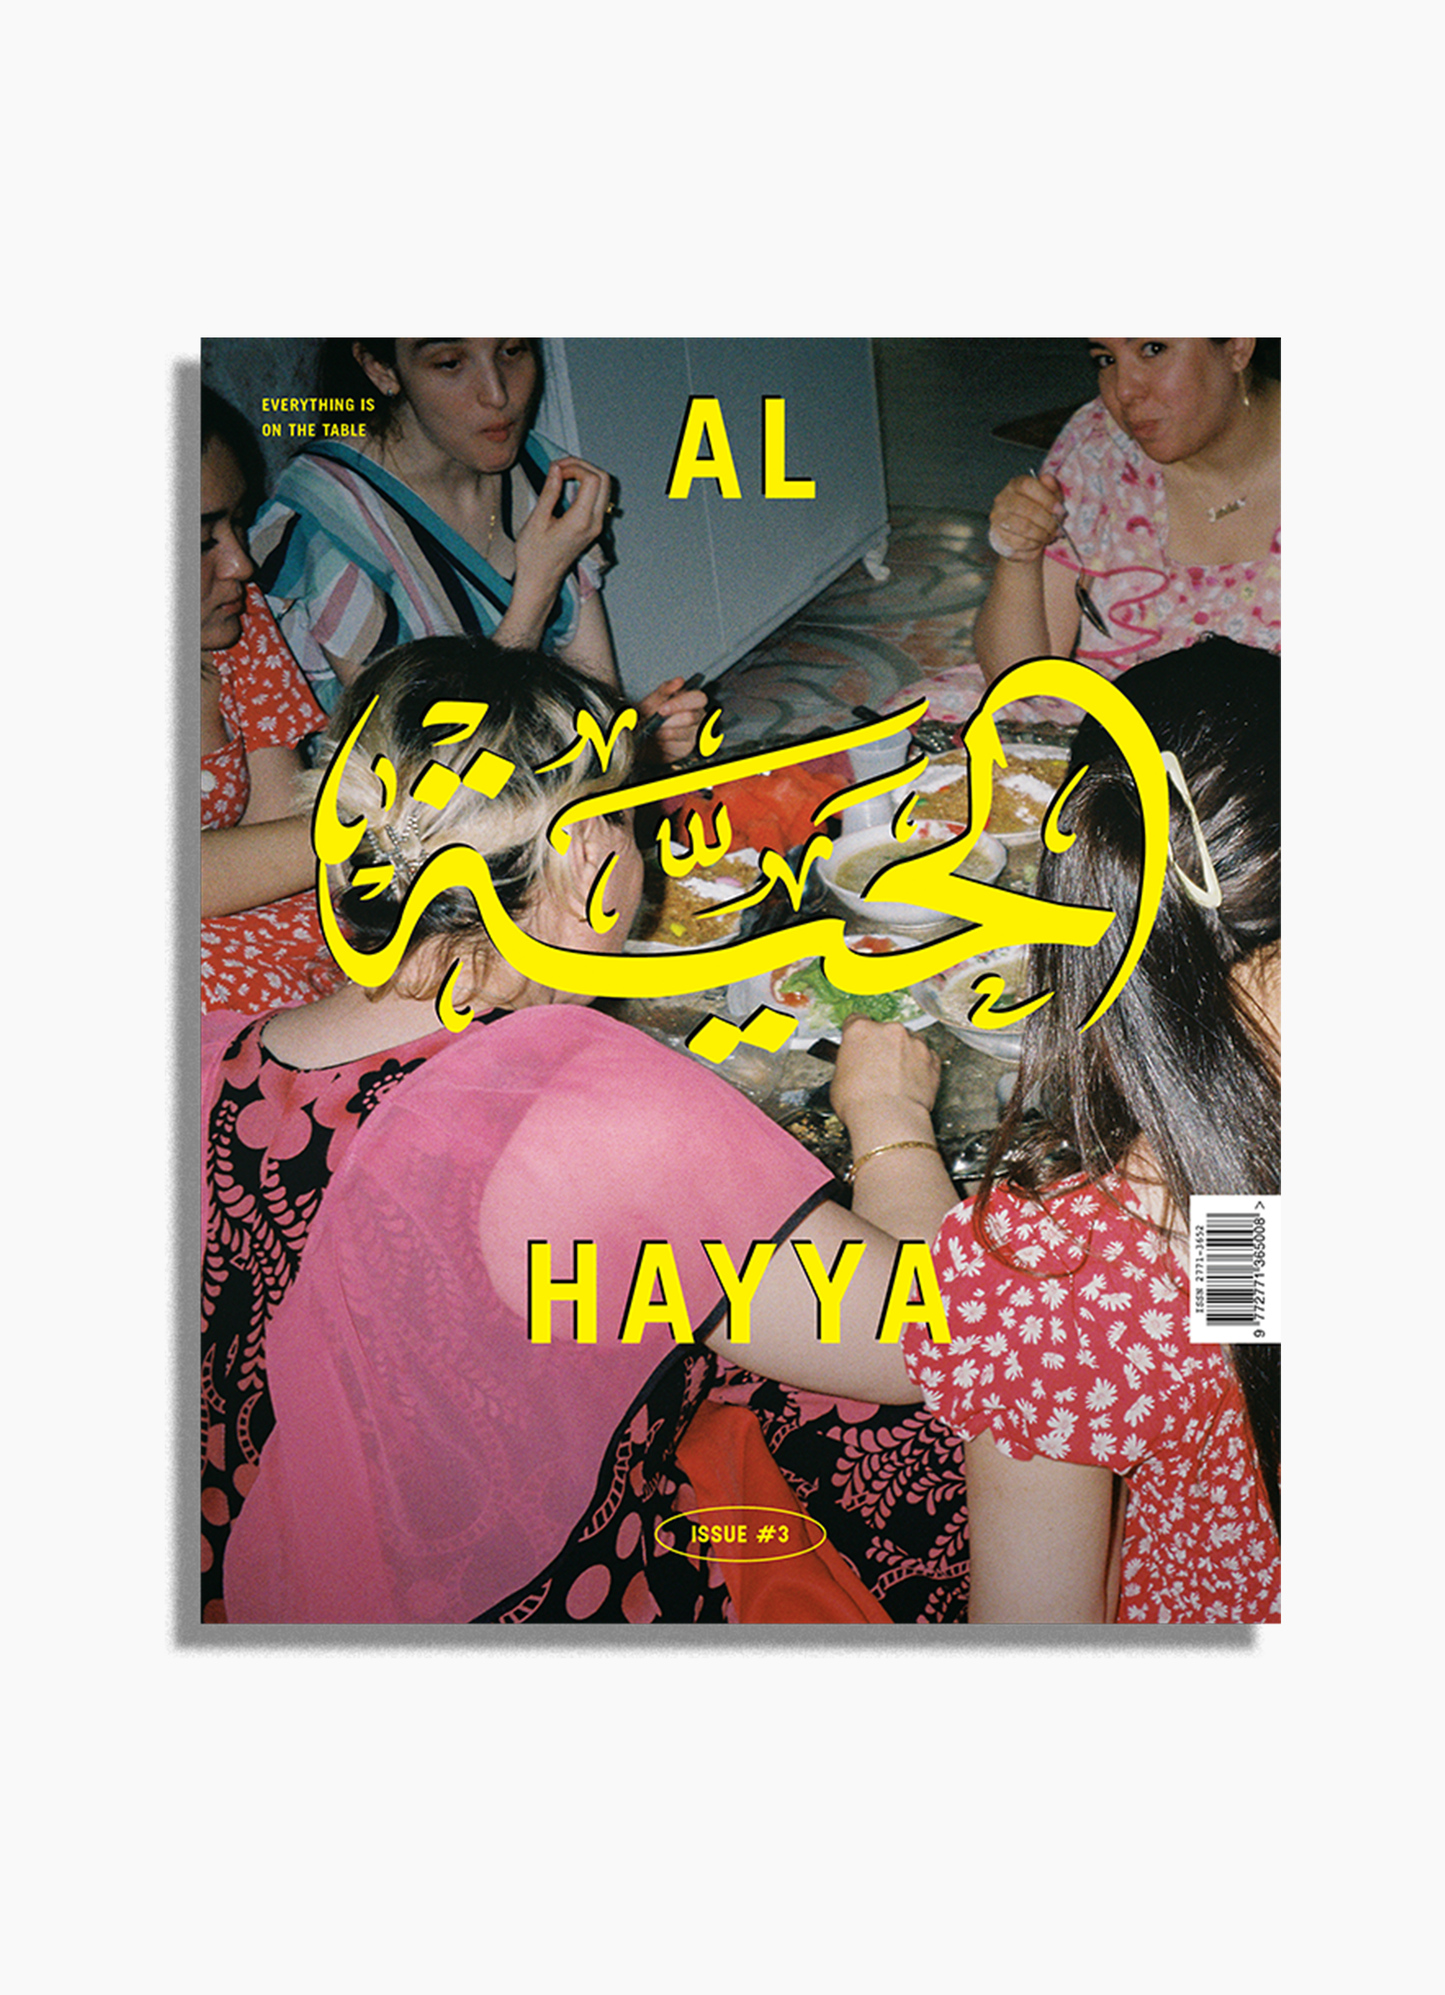 Al Hayya, Issue 3